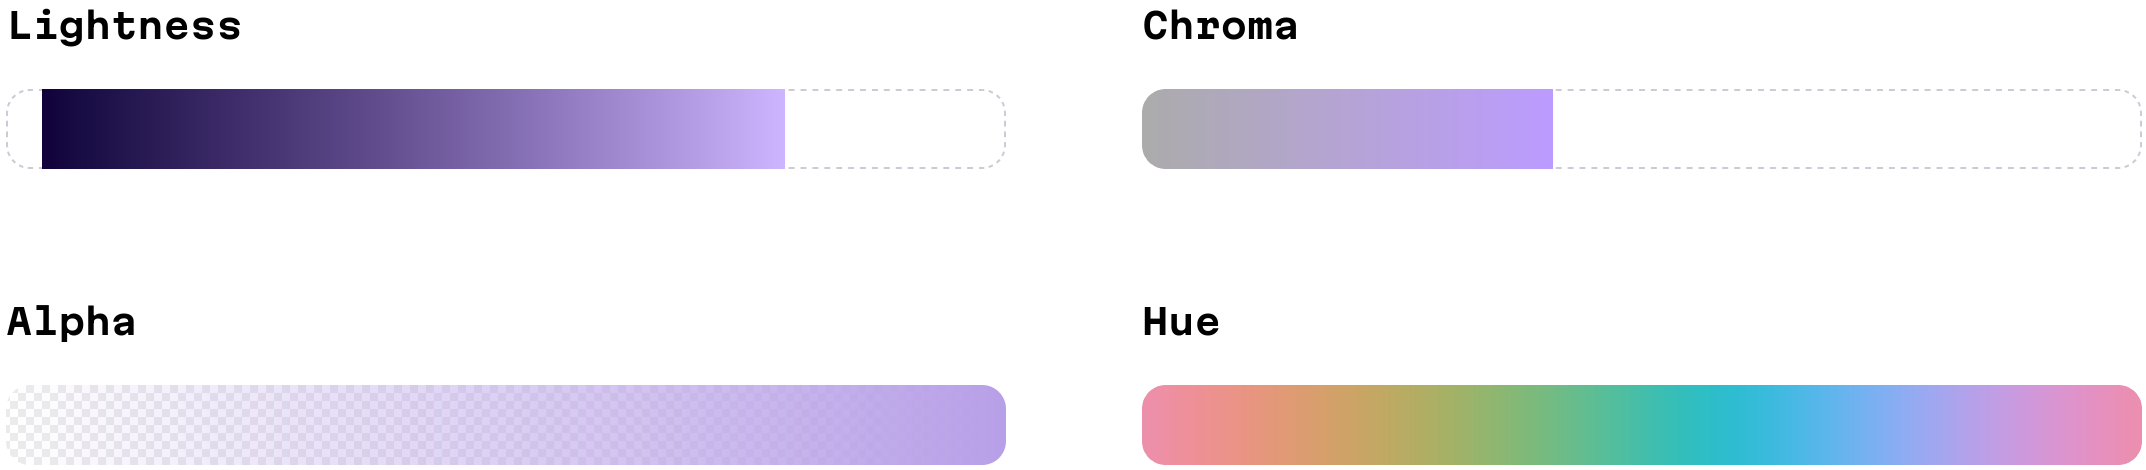 Четыре полоски, обозначающие оси OKLCH. Верхняя слева показывает яркость: начинается как тёмно-фиолетовый, становится светло-фиолетовым при движении вправо, и в конце становится неотличимым от белого. Верхняя справа показывает насыщенность: начинается как серо-фиолетовый и переходит в светло-фиолетовый, начиная с трети столбца, и в итоге едва отличается от белого цвета. Нижняя слева показывает альфу: переход альфа-канала в виде оттенков фиолетового, начиная с едва заметных. Нижняя справа показывает оттенок: вариации ярких цветов, которые сменяются друг другом.